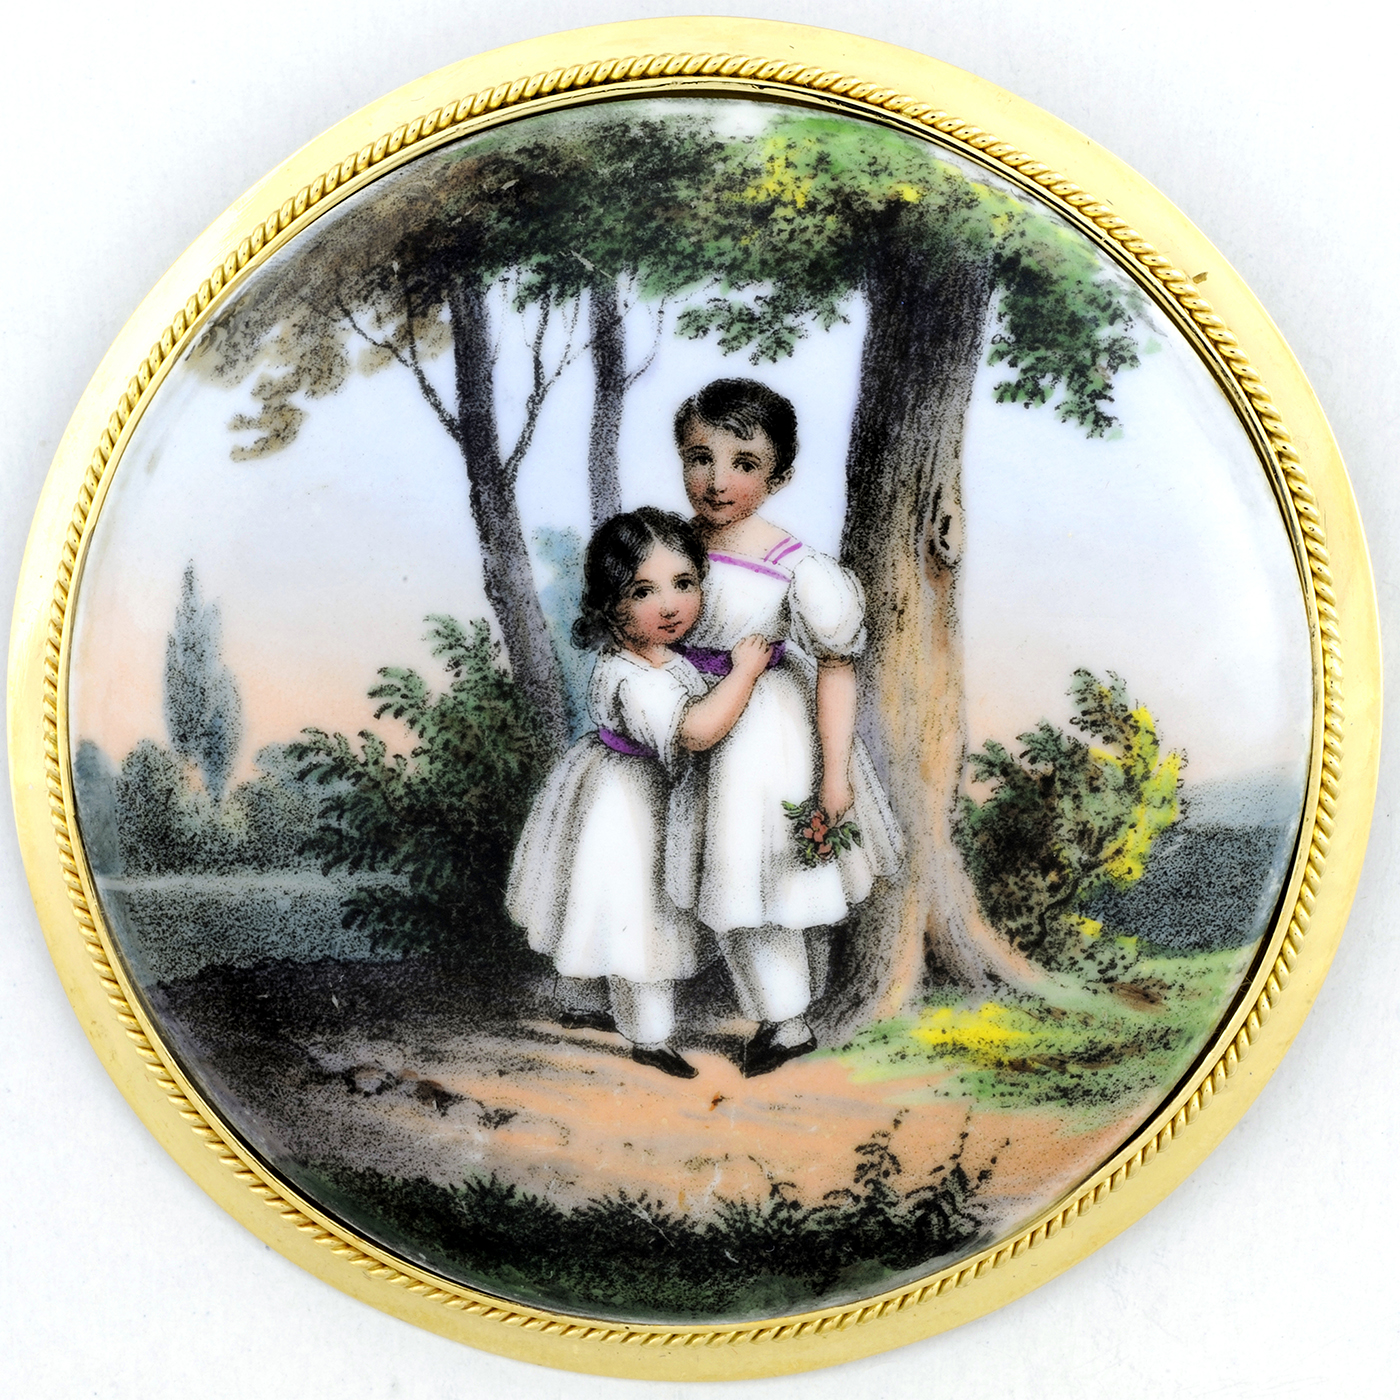 Broche de Gran Tamaño, artesanal, de porcelana francesa y oro de 18k. (siglo XIX)